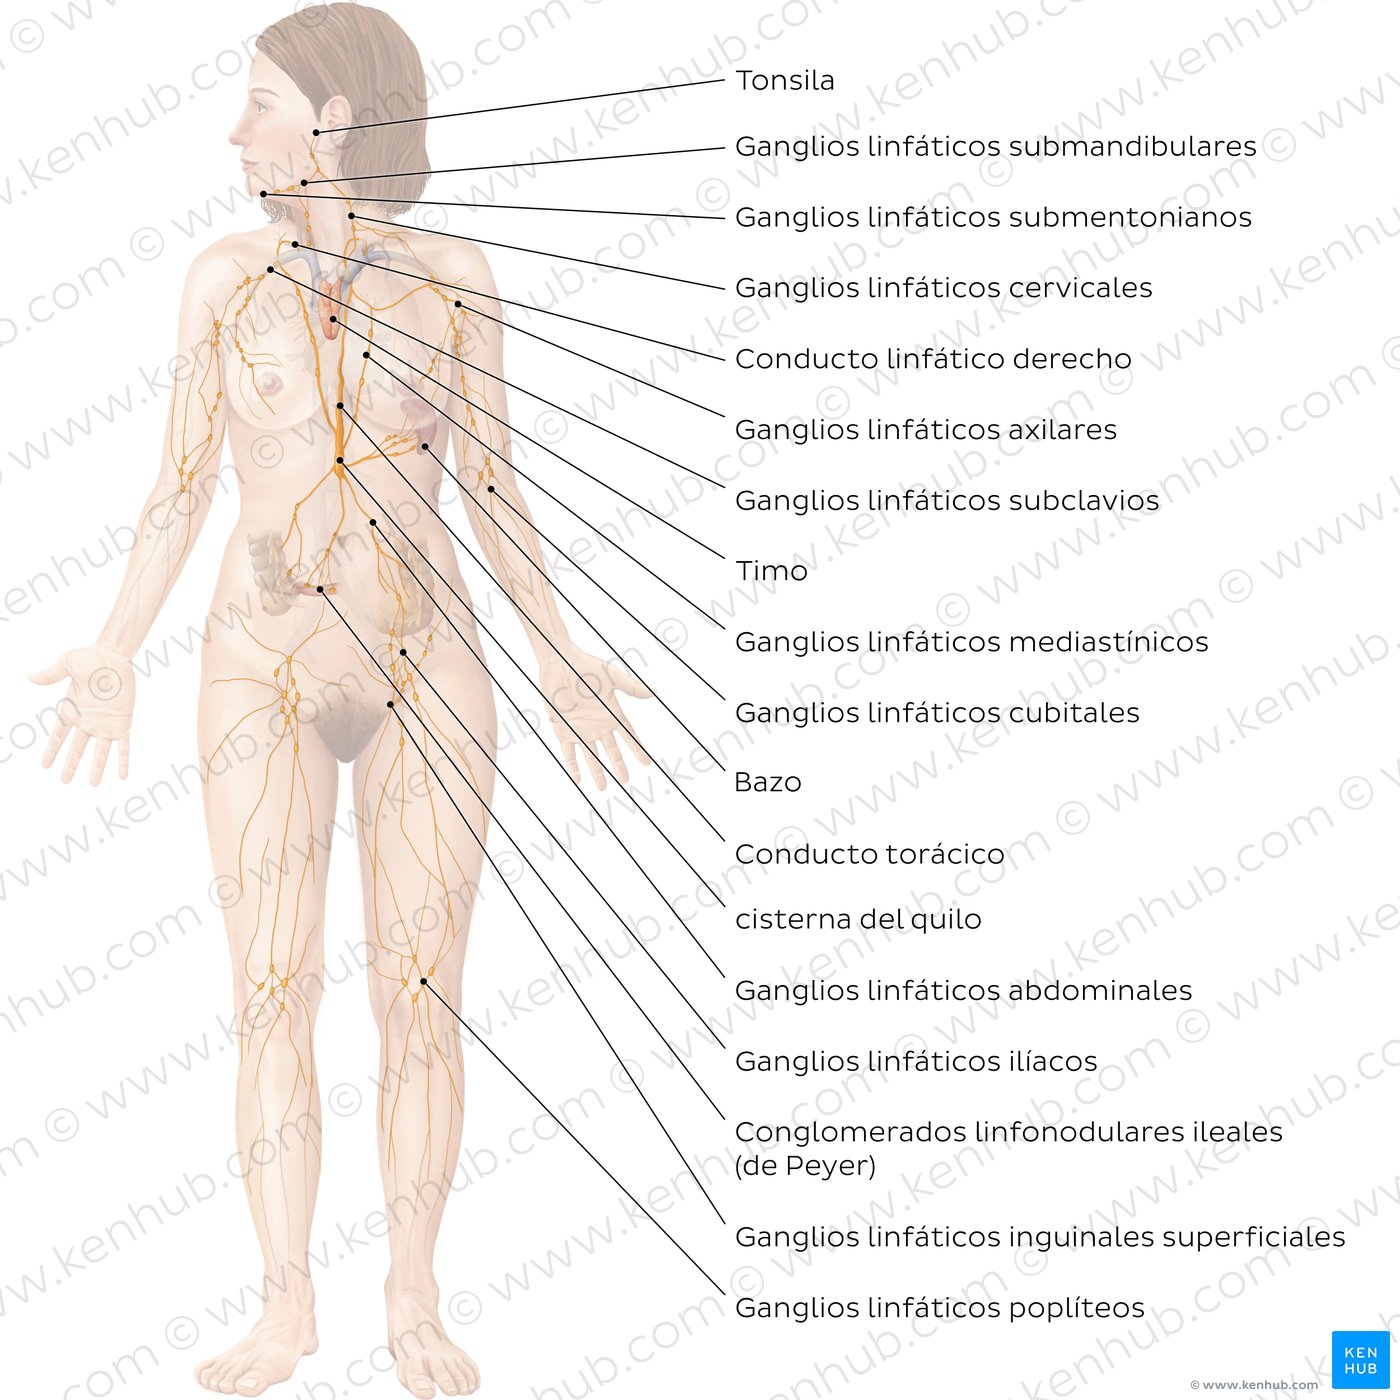 Diagrama etiquetado del sistema linfático